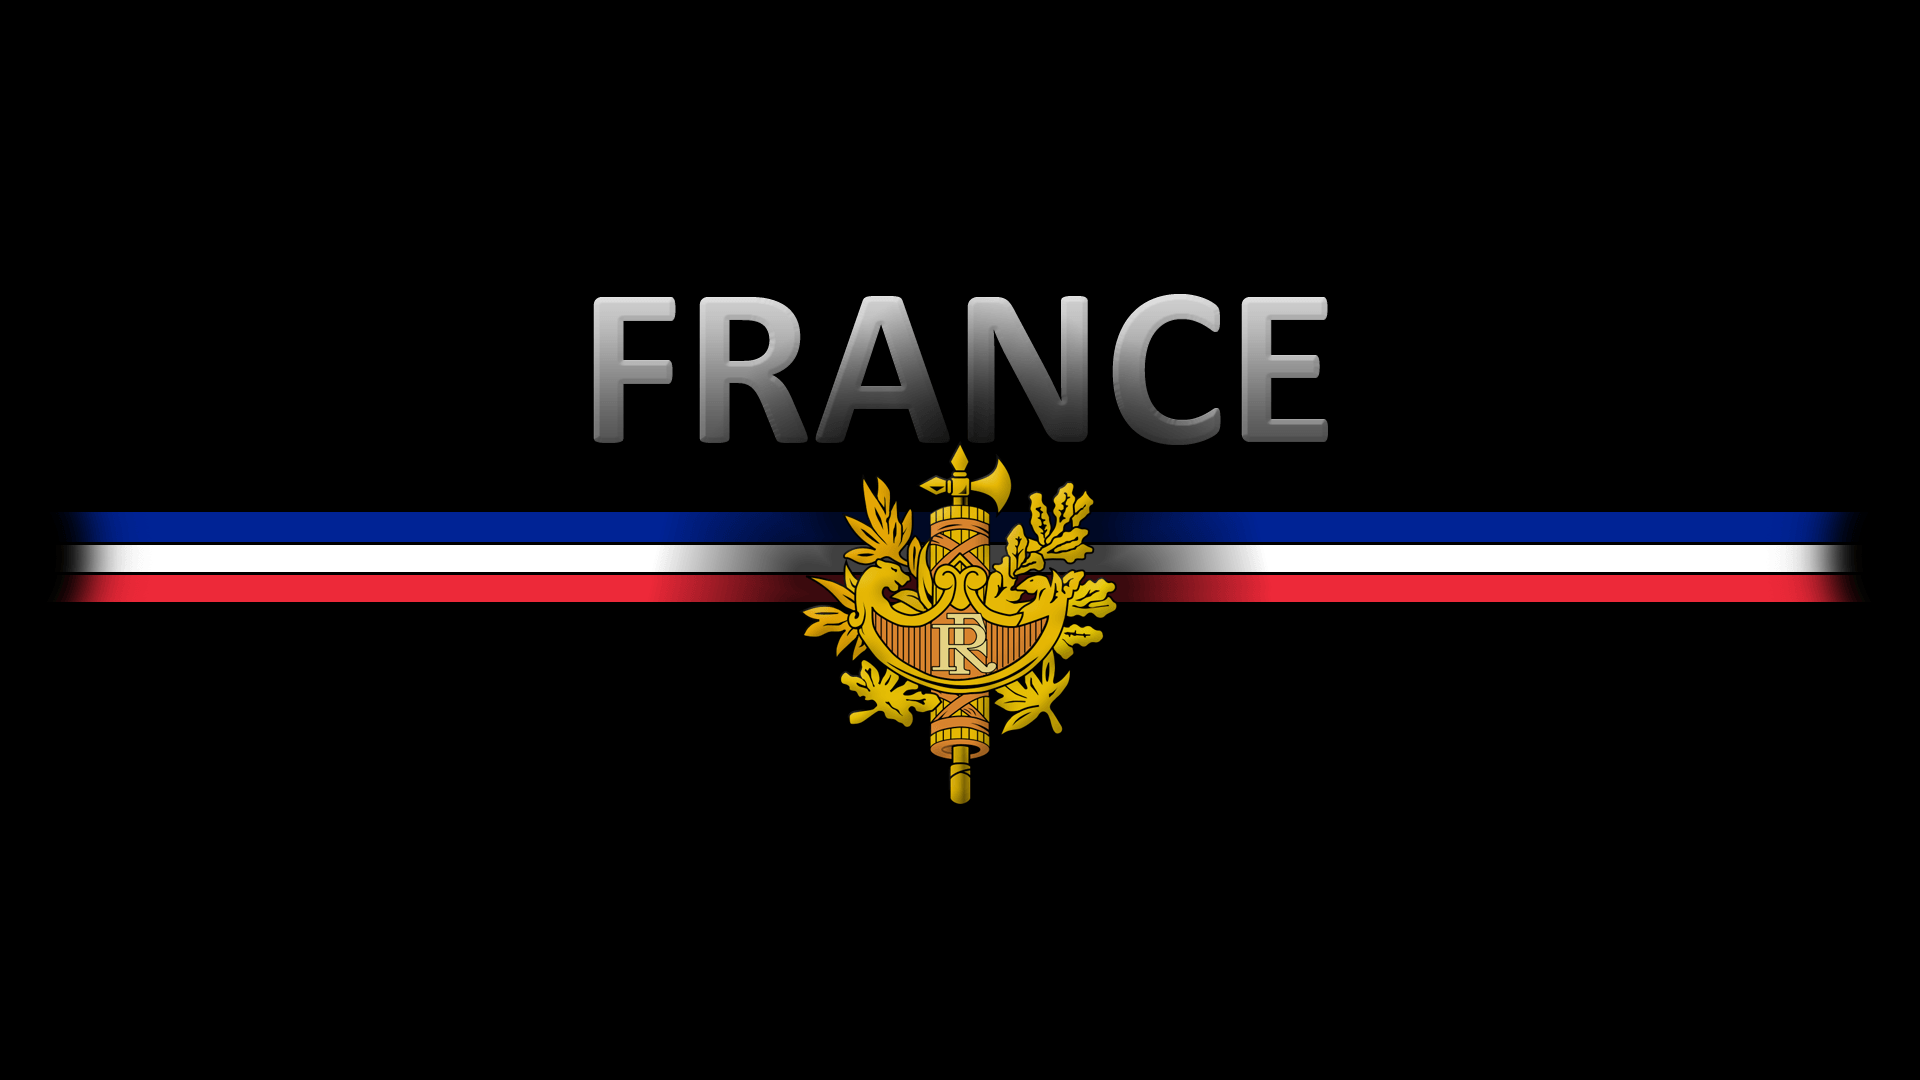 France crest flag wallpapers